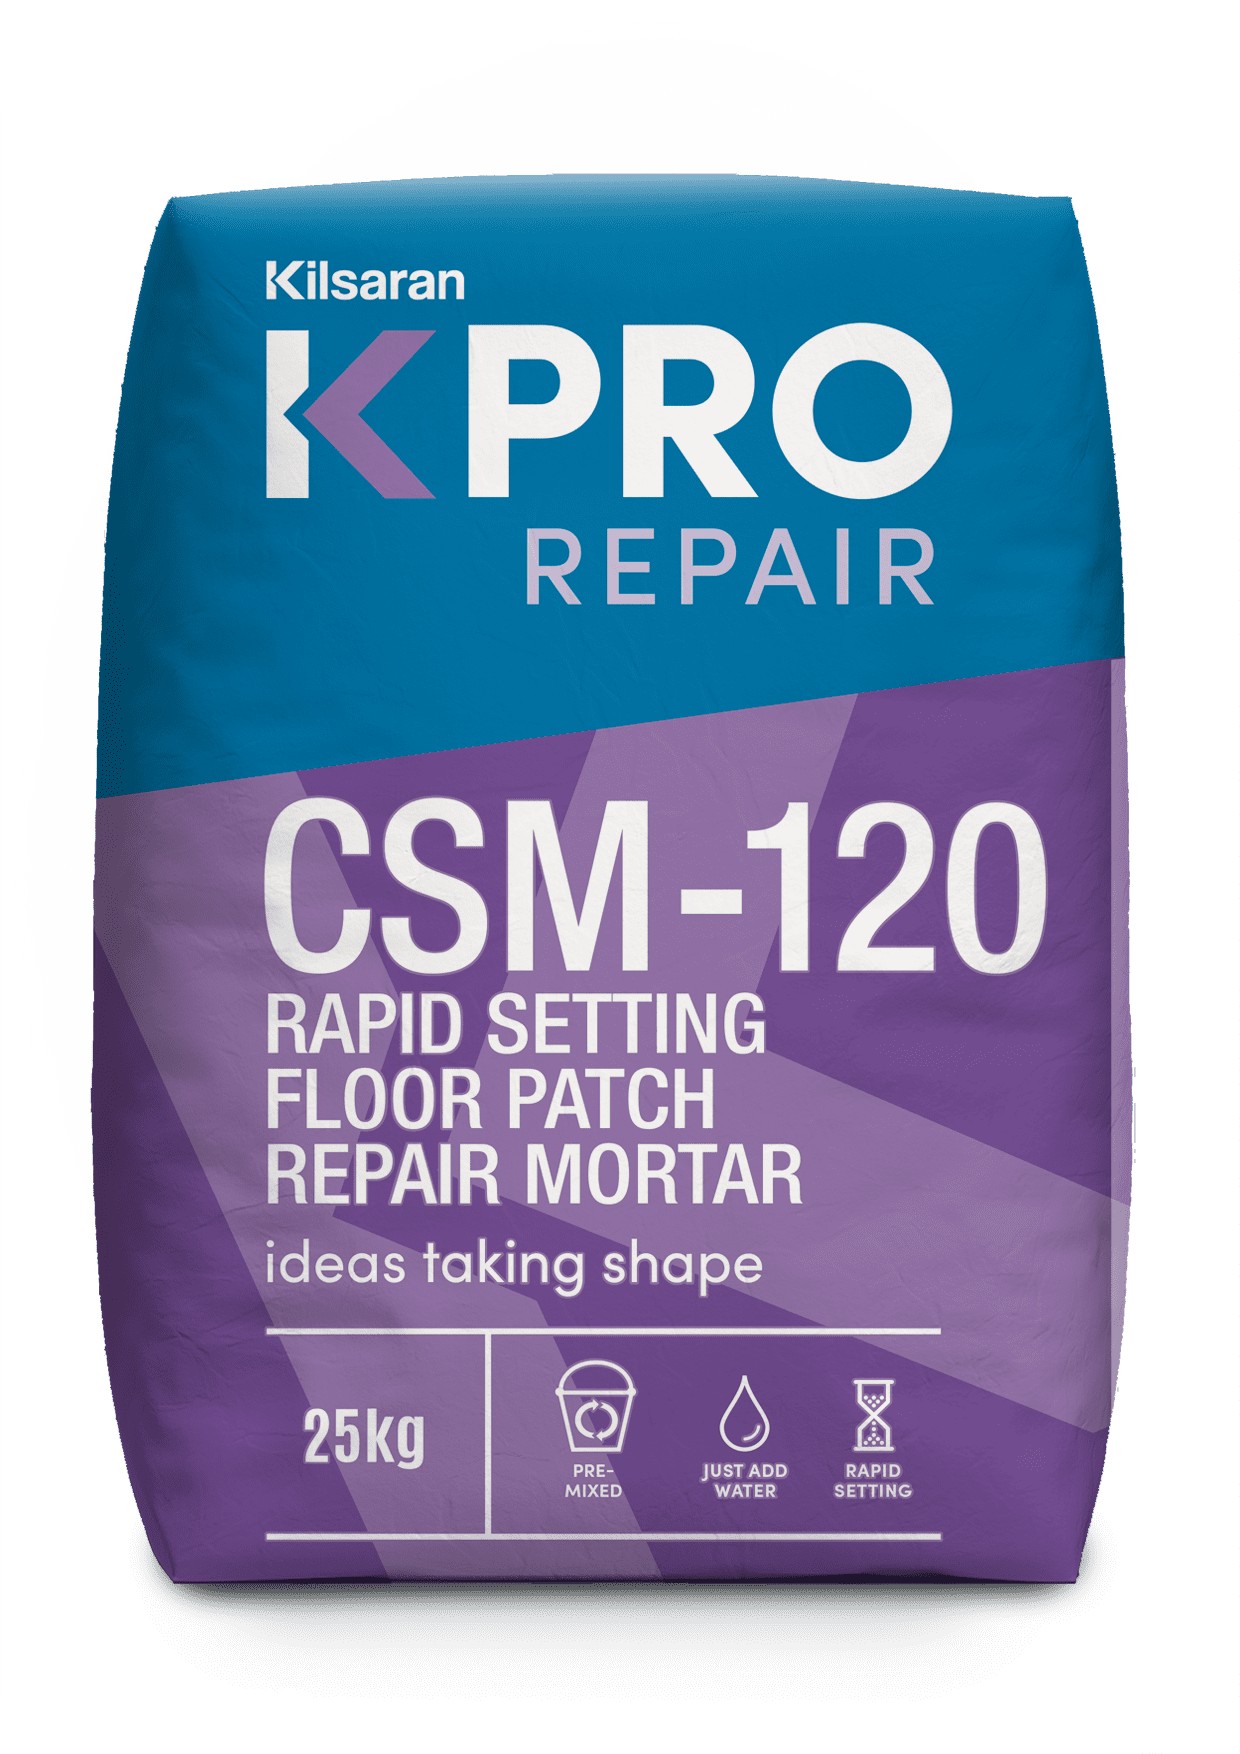 KPRO Repair CSM-120 product image